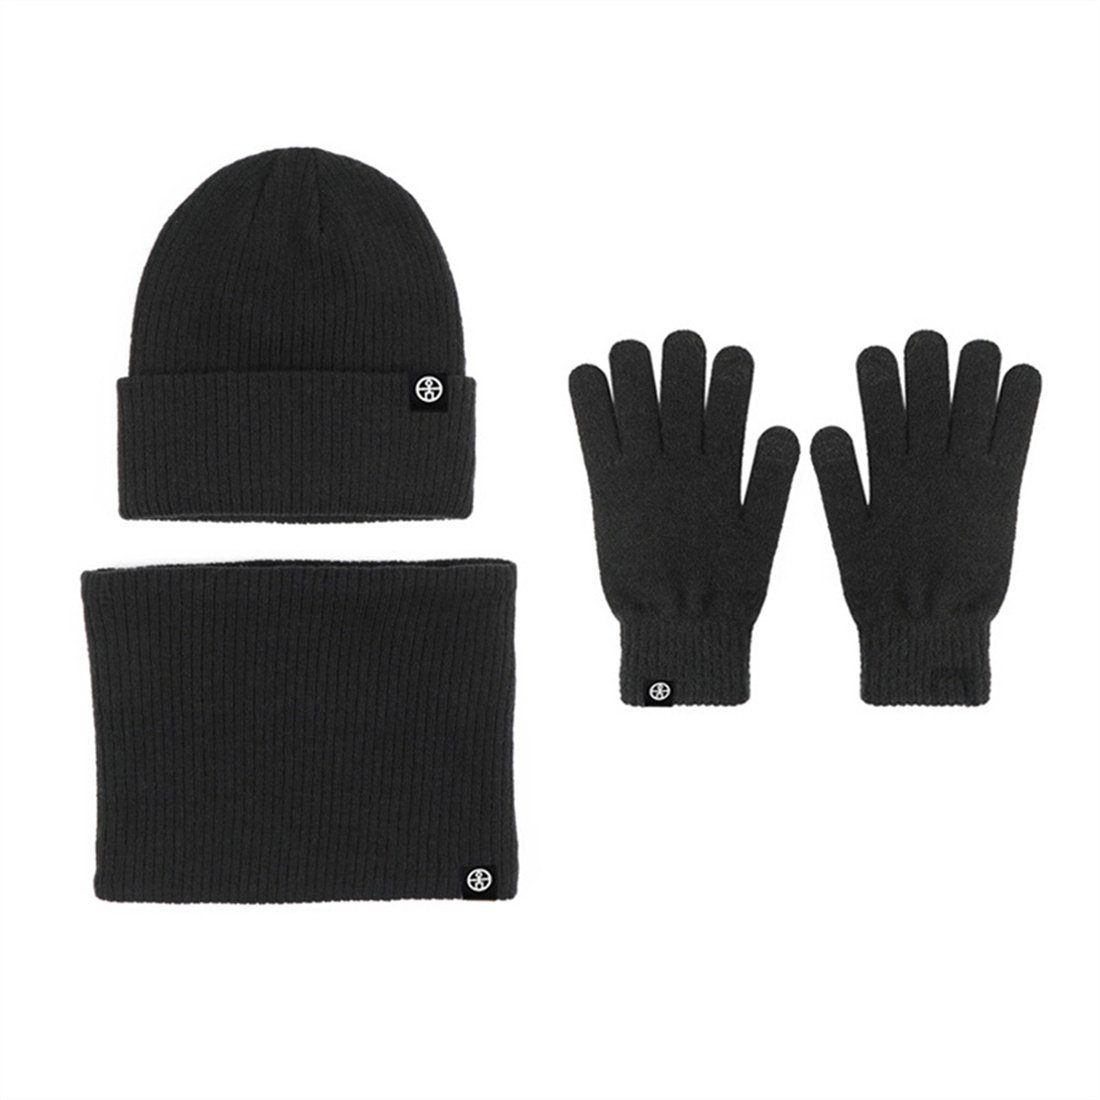 Schal + Piece Schwarz Strickmütze Handschuhe 3 Set, DÖRÖY Strickmütze Unisex + Winter Warmth